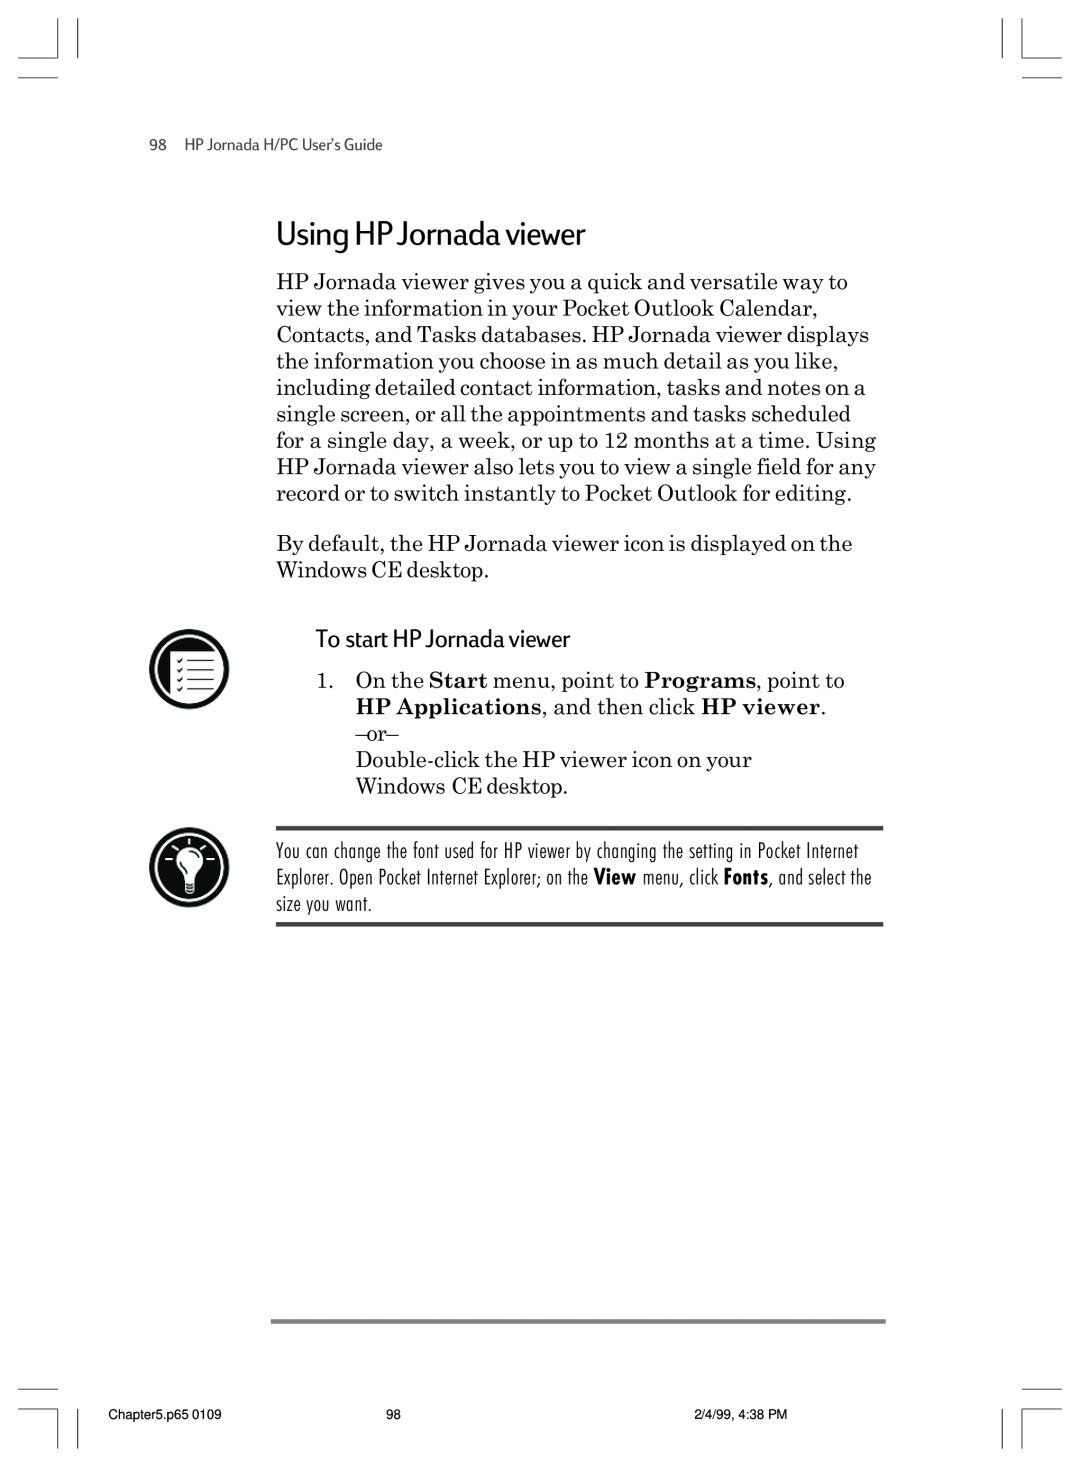 HP 820 E manual Using HP Jornada viewer, To start HP Jornada viewer 